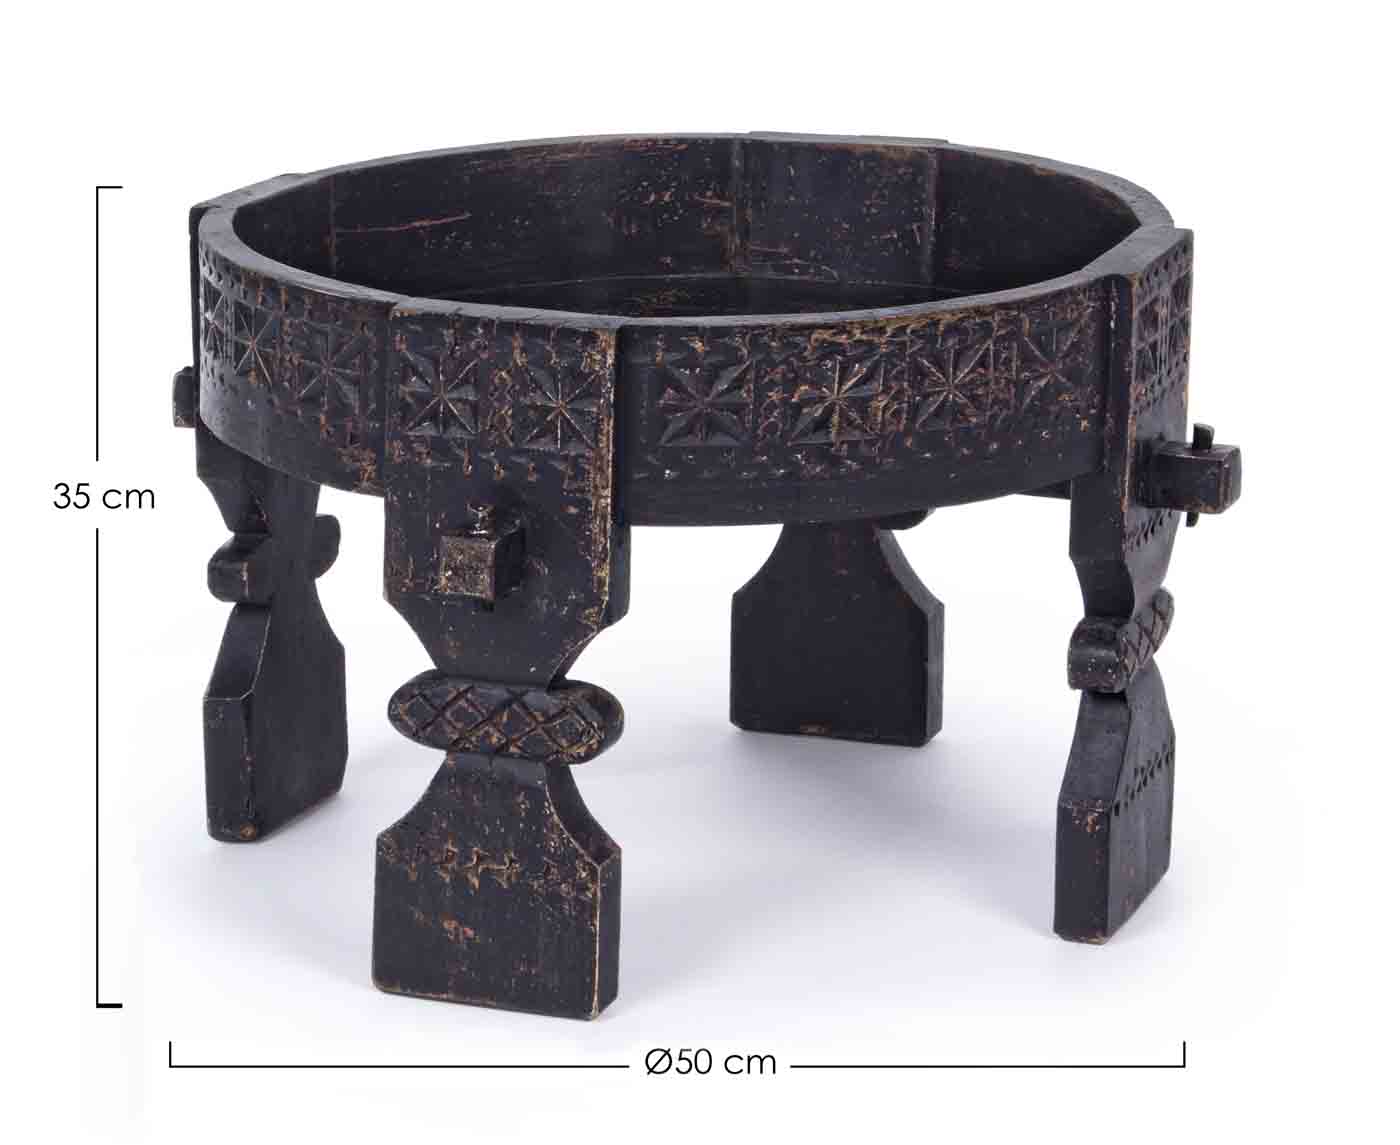 Das Skandinavische Design des Beistelltisches Yasir überzeugt. Gefertigt wurde der Tisch aus Mangoholz und hat per Hand eine Feinbearbeitung erhalten. Der Tisch ist in einem schwarzen Farbton.